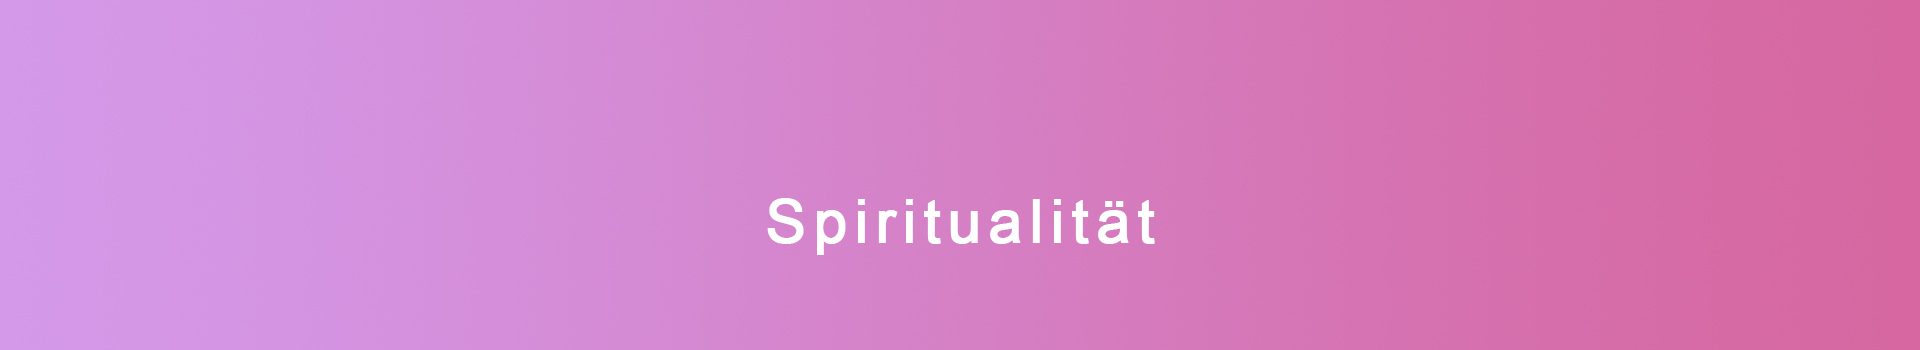 Spiritualität-Headerbild2